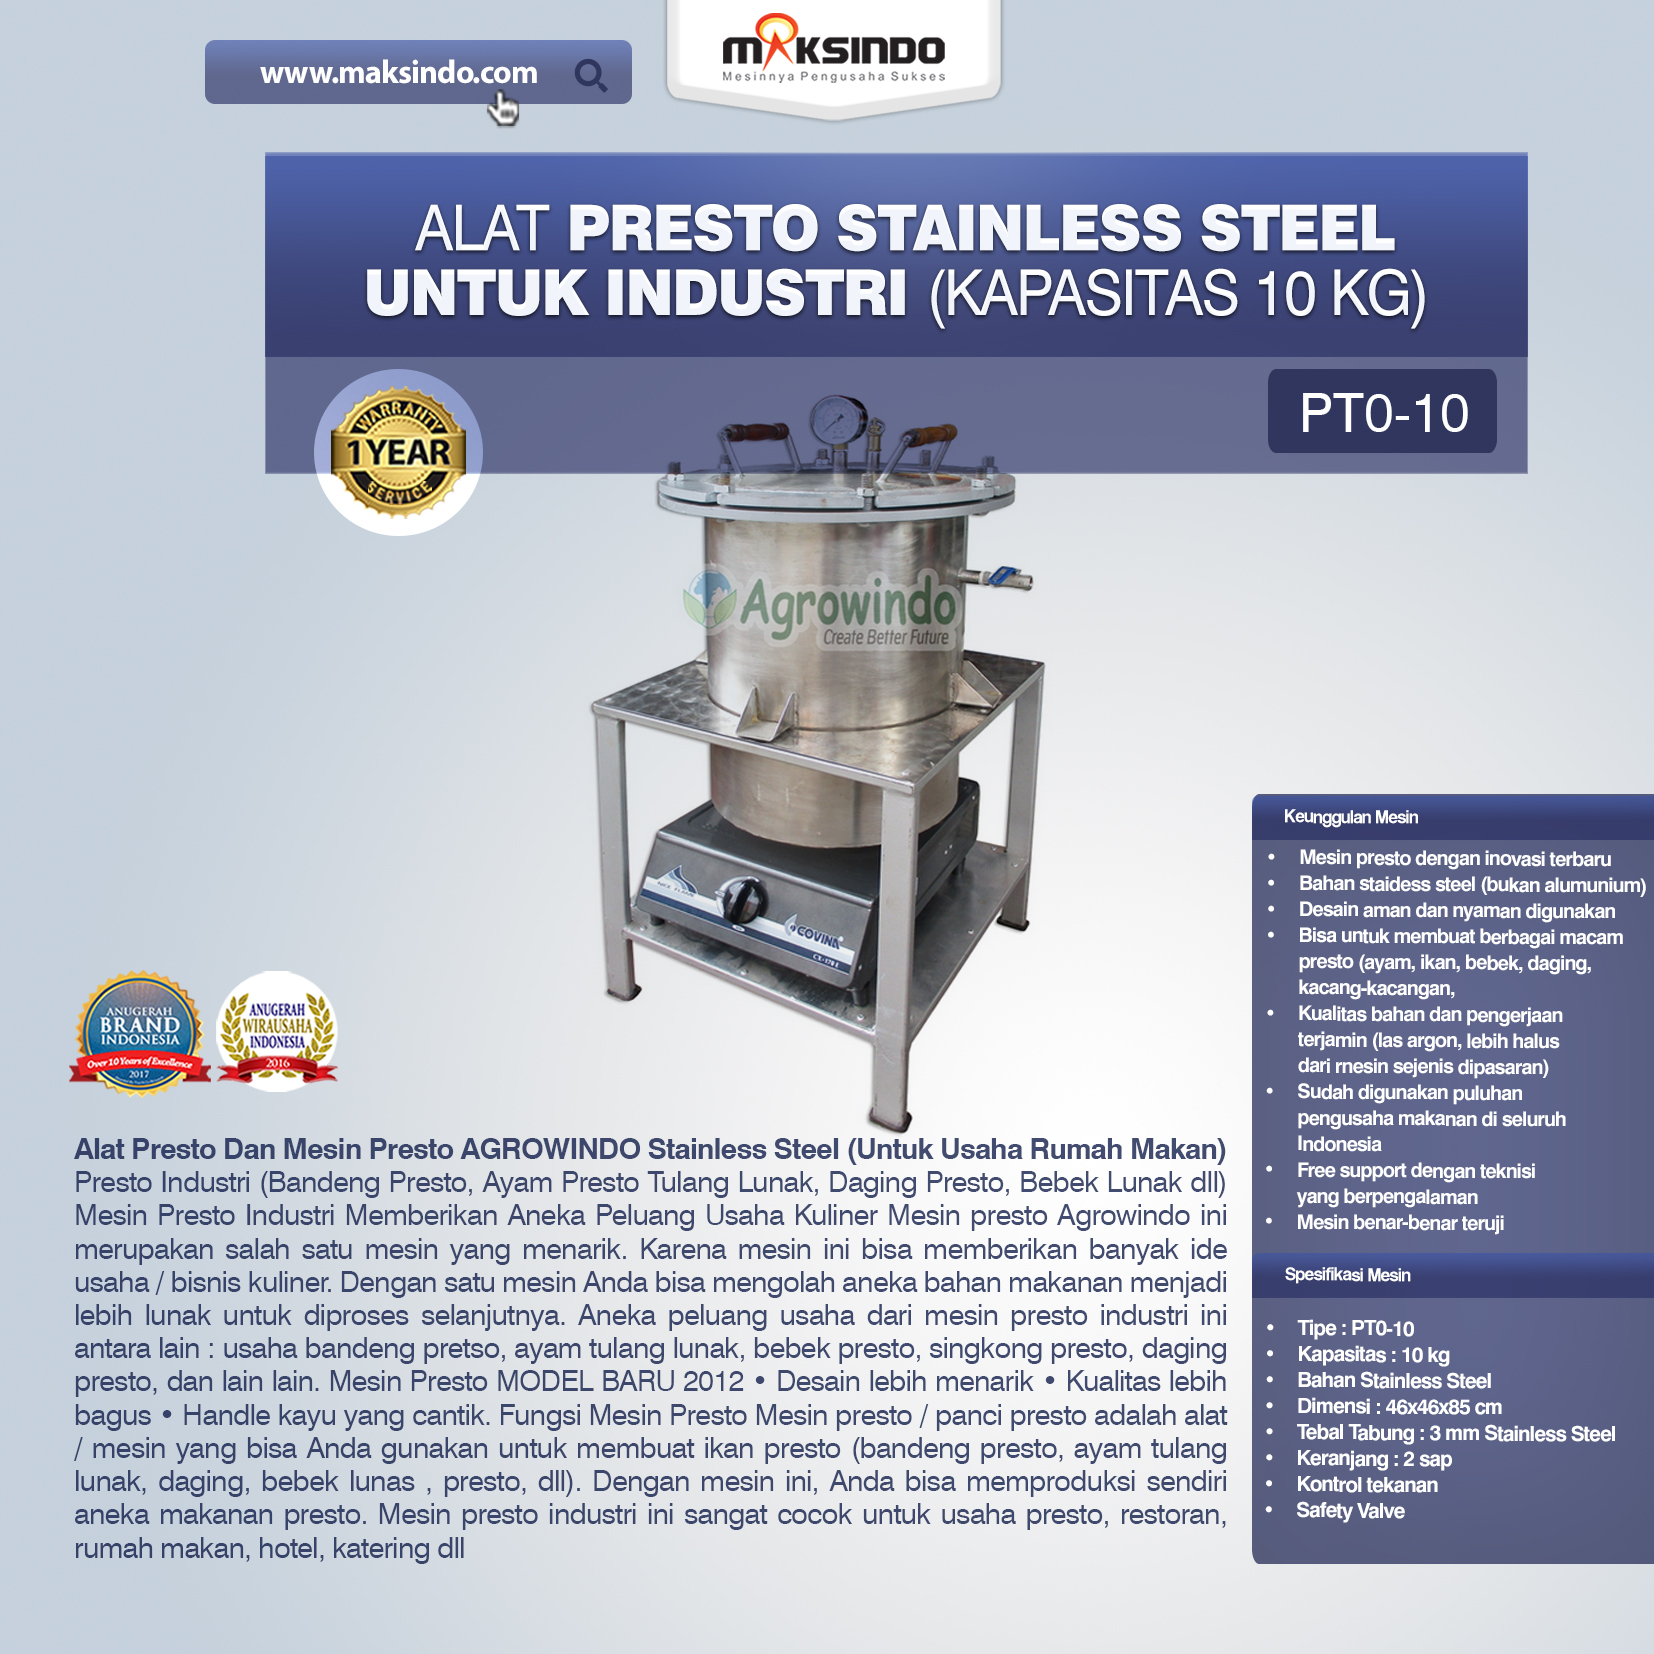 Jual Mesin Presto Stainless Steel Untuk Industri di Banjarmasin